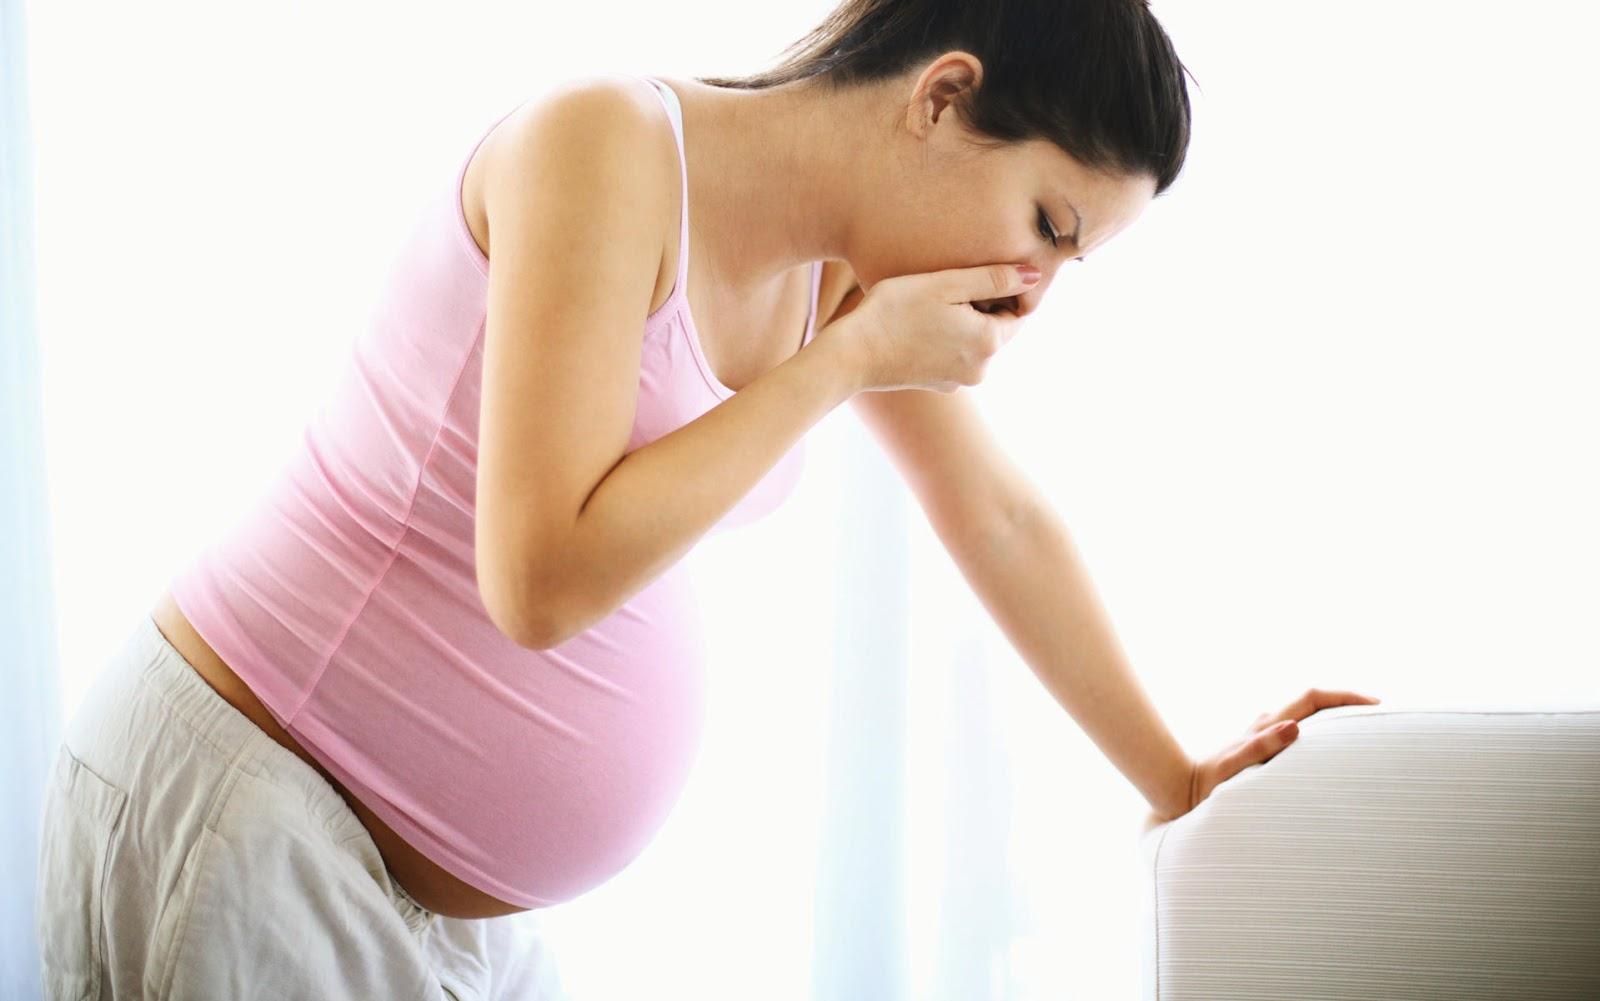 गर्भावस्था के दौरान करे योग, होगी नॉर्मल डिलीवरी